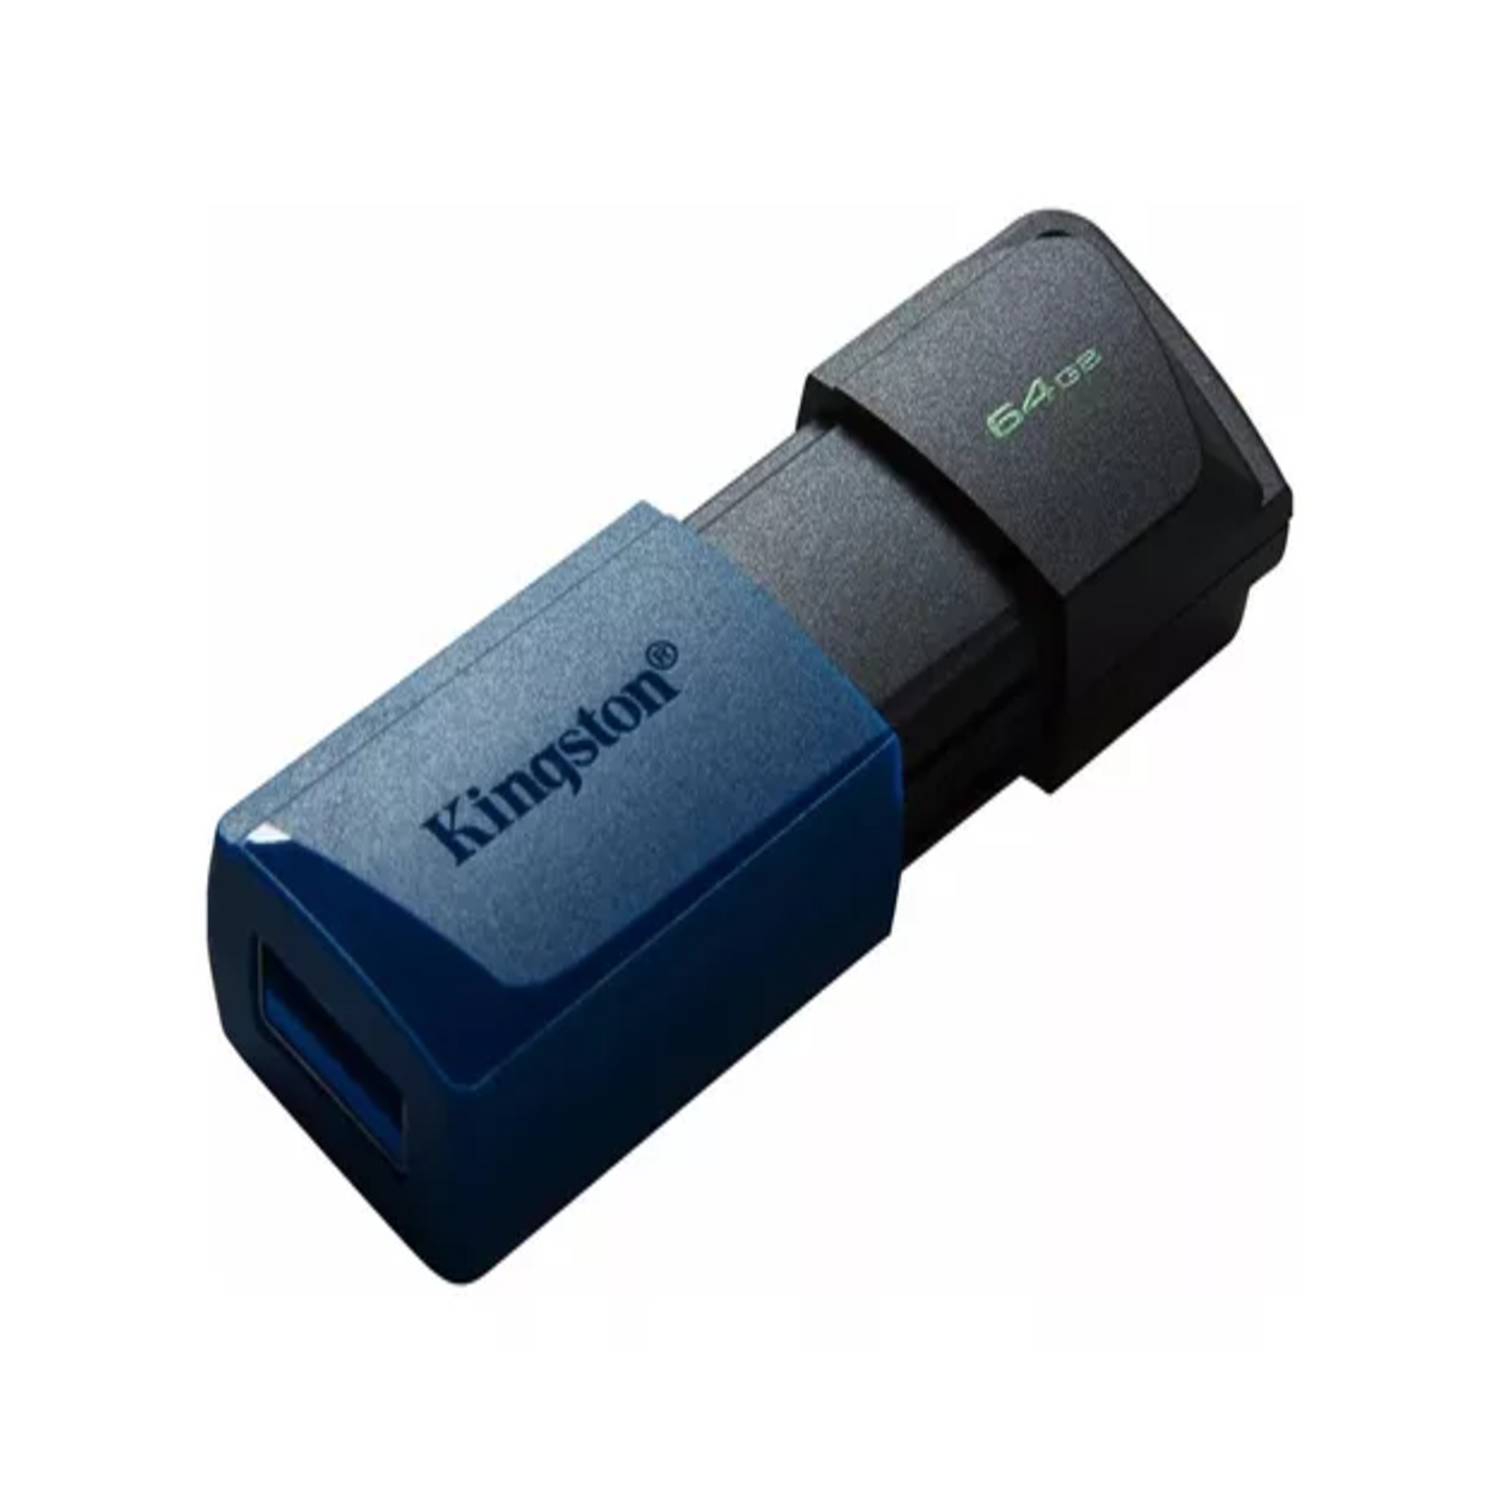 Memoria USB Flix 64 GB 3.0 Negro/Amarillo